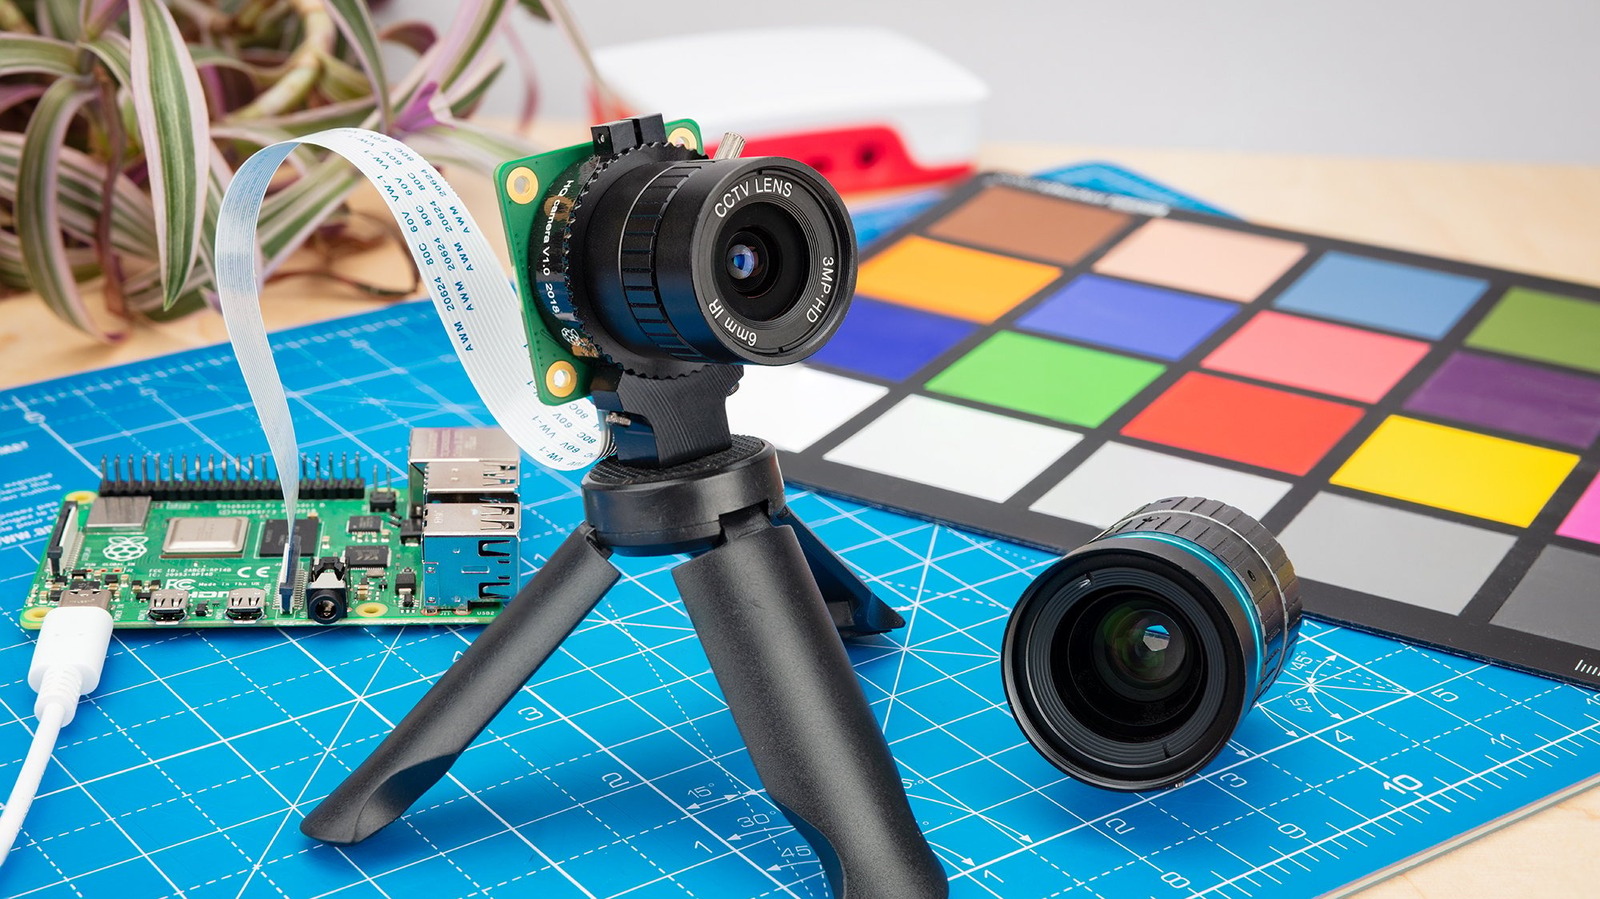 6 پروژه جالبی که می توانید با Raspberry Pi و دوربین انجام دهید